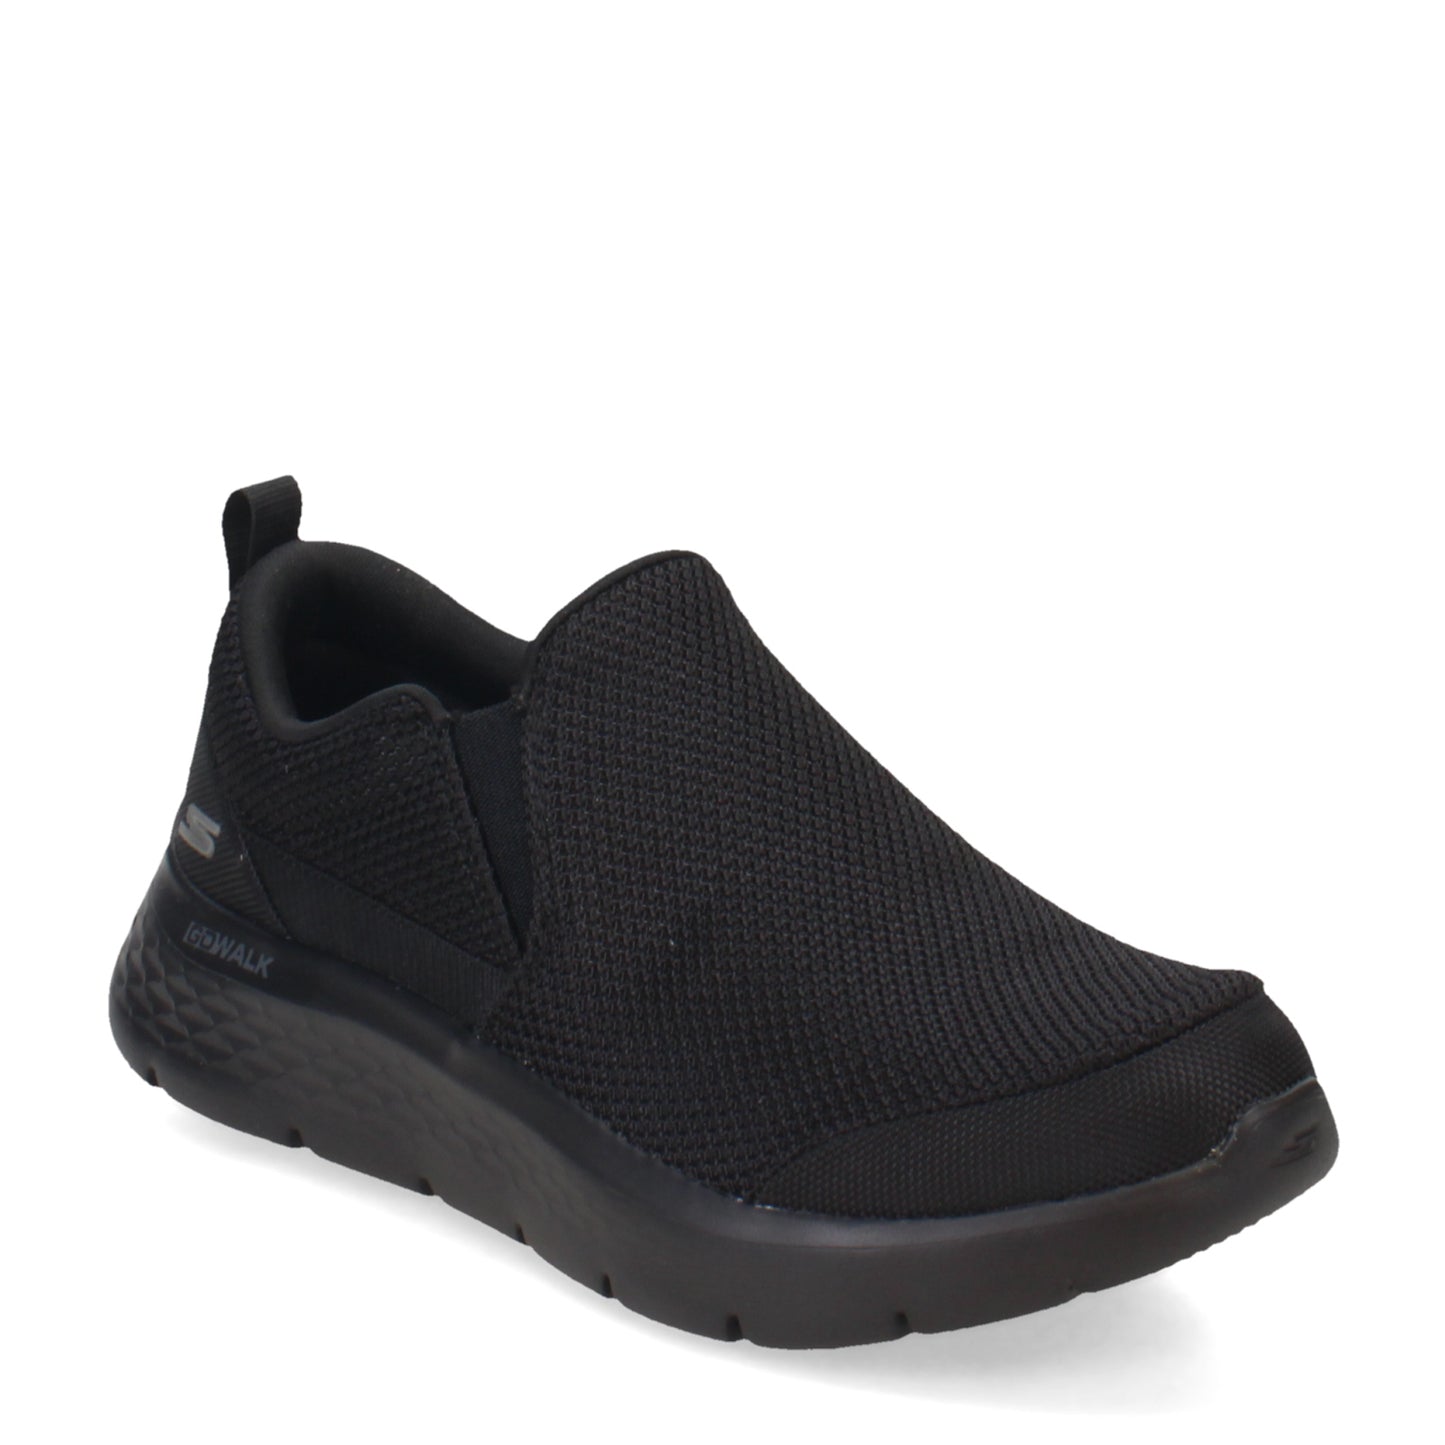 Peltz Shoes  Men's Skechers GO WALK Flex - Impeccable II Walking Shoe - Wide Width Black 216492WW-BBK